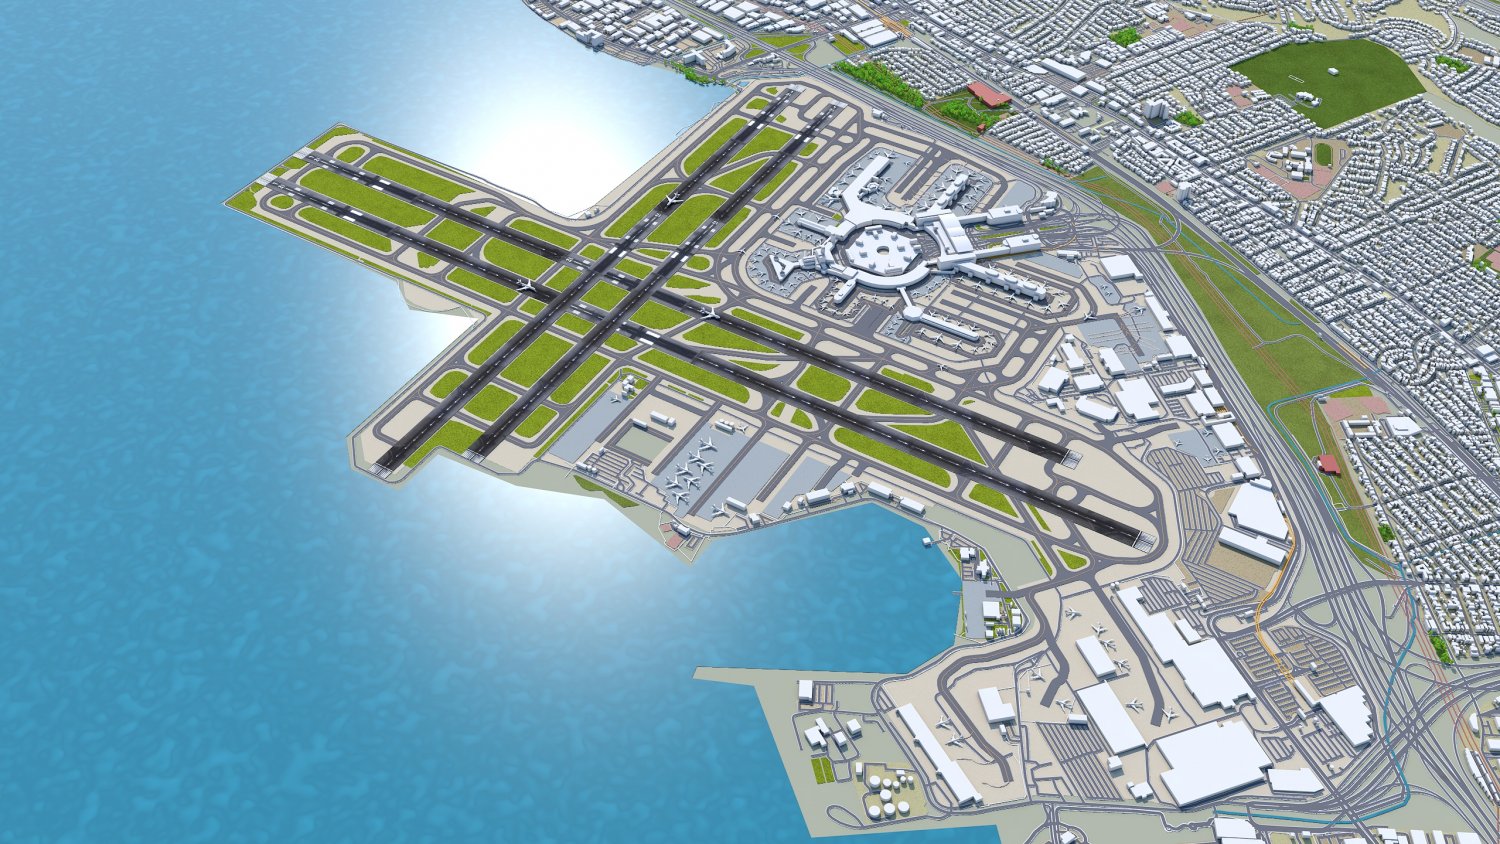 san francisco airport runway map